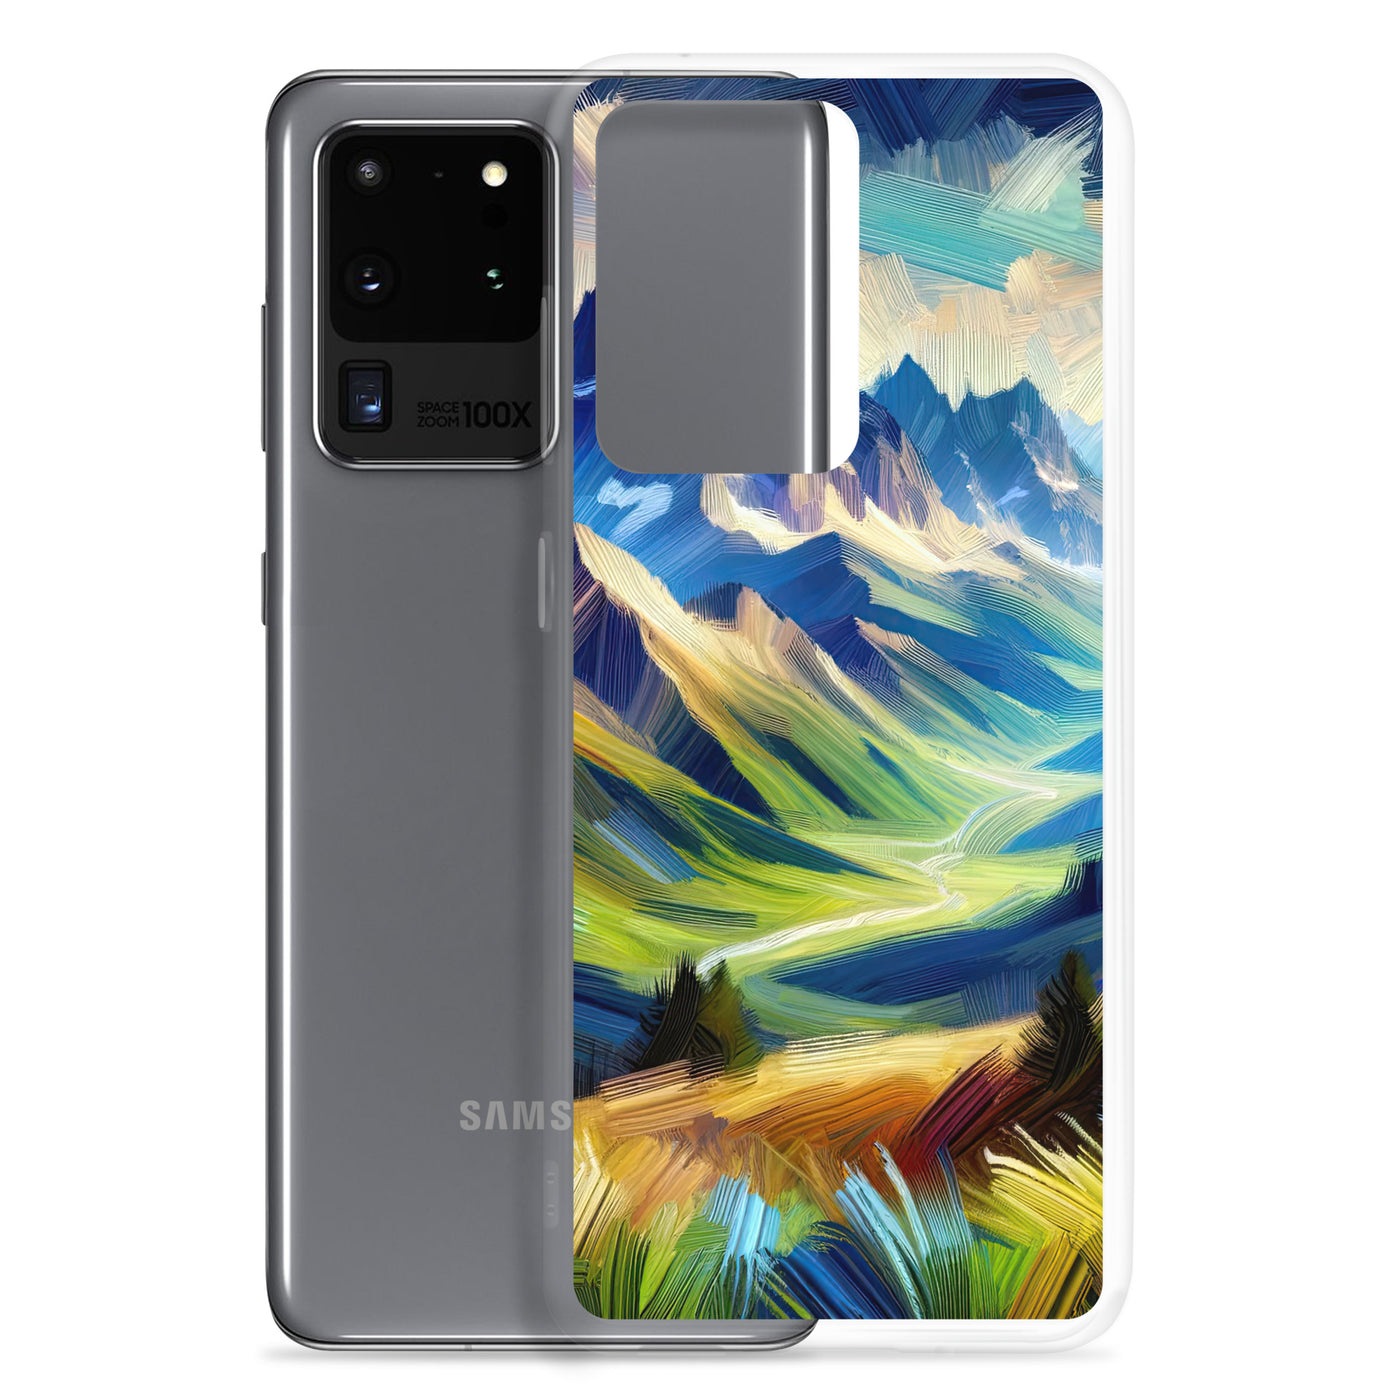 Impressionistische Alpen, lebendige Farbtupfer und Lichteffekte - Samsung Schutzhülle (durchsichtig) berge xxx yyy zzz